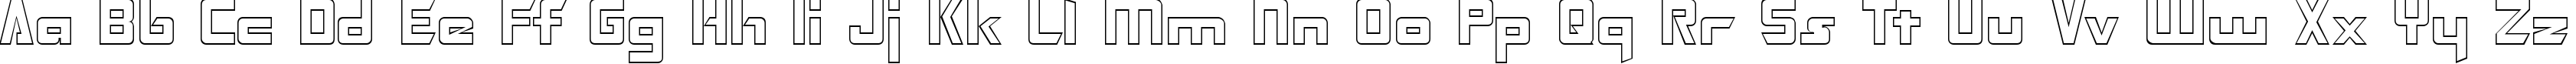 Пример написания английского алфавита шрифтом Transformers Hollow  Normal